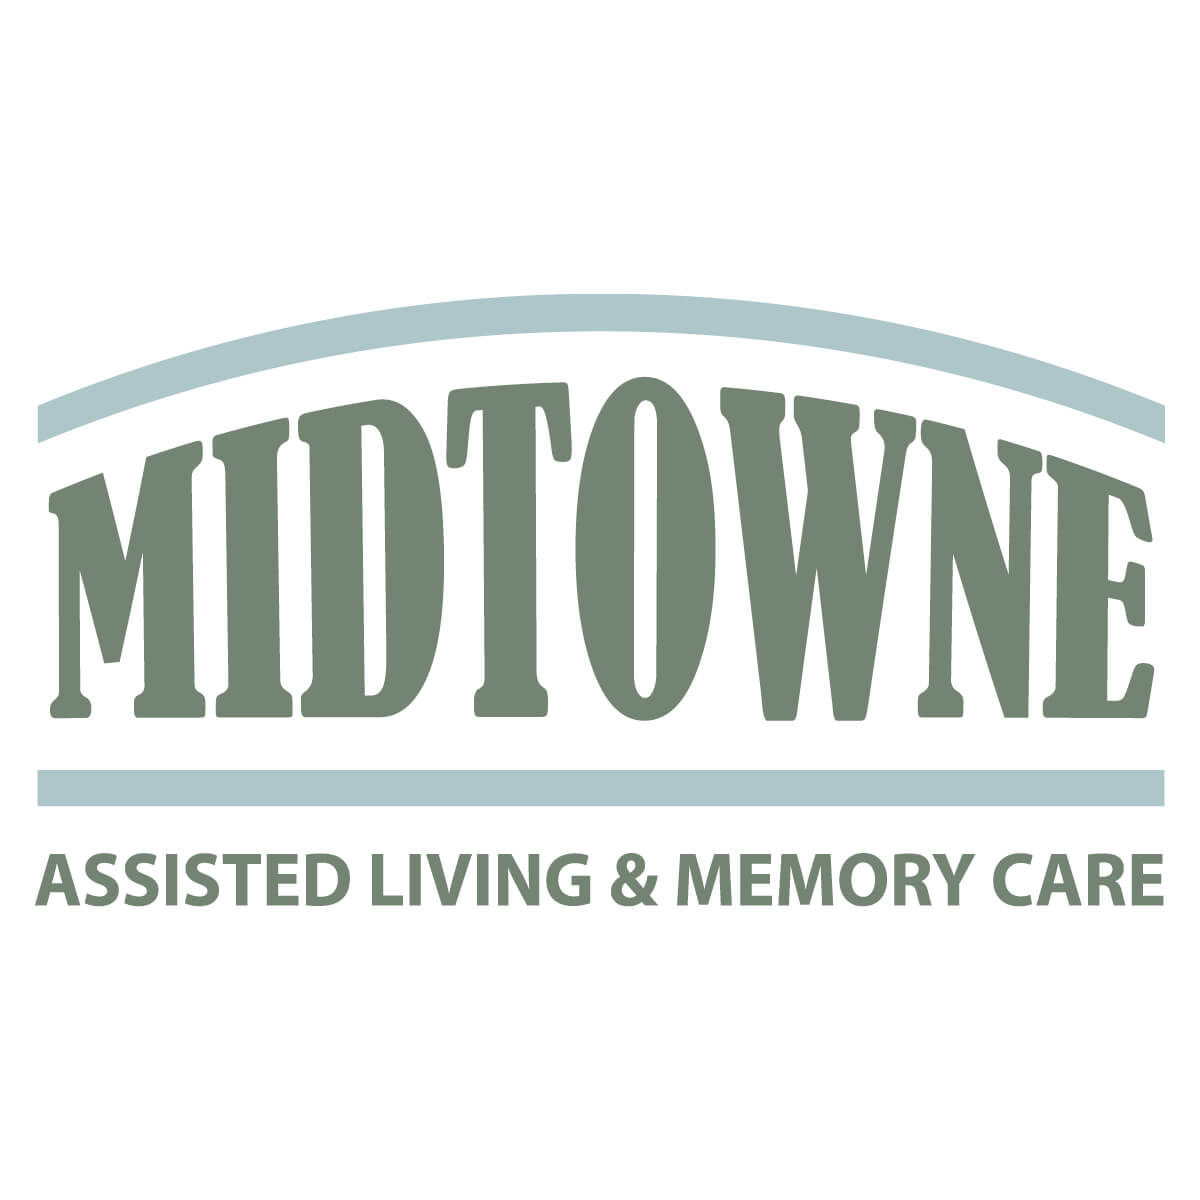 Midtowne Logo - Square